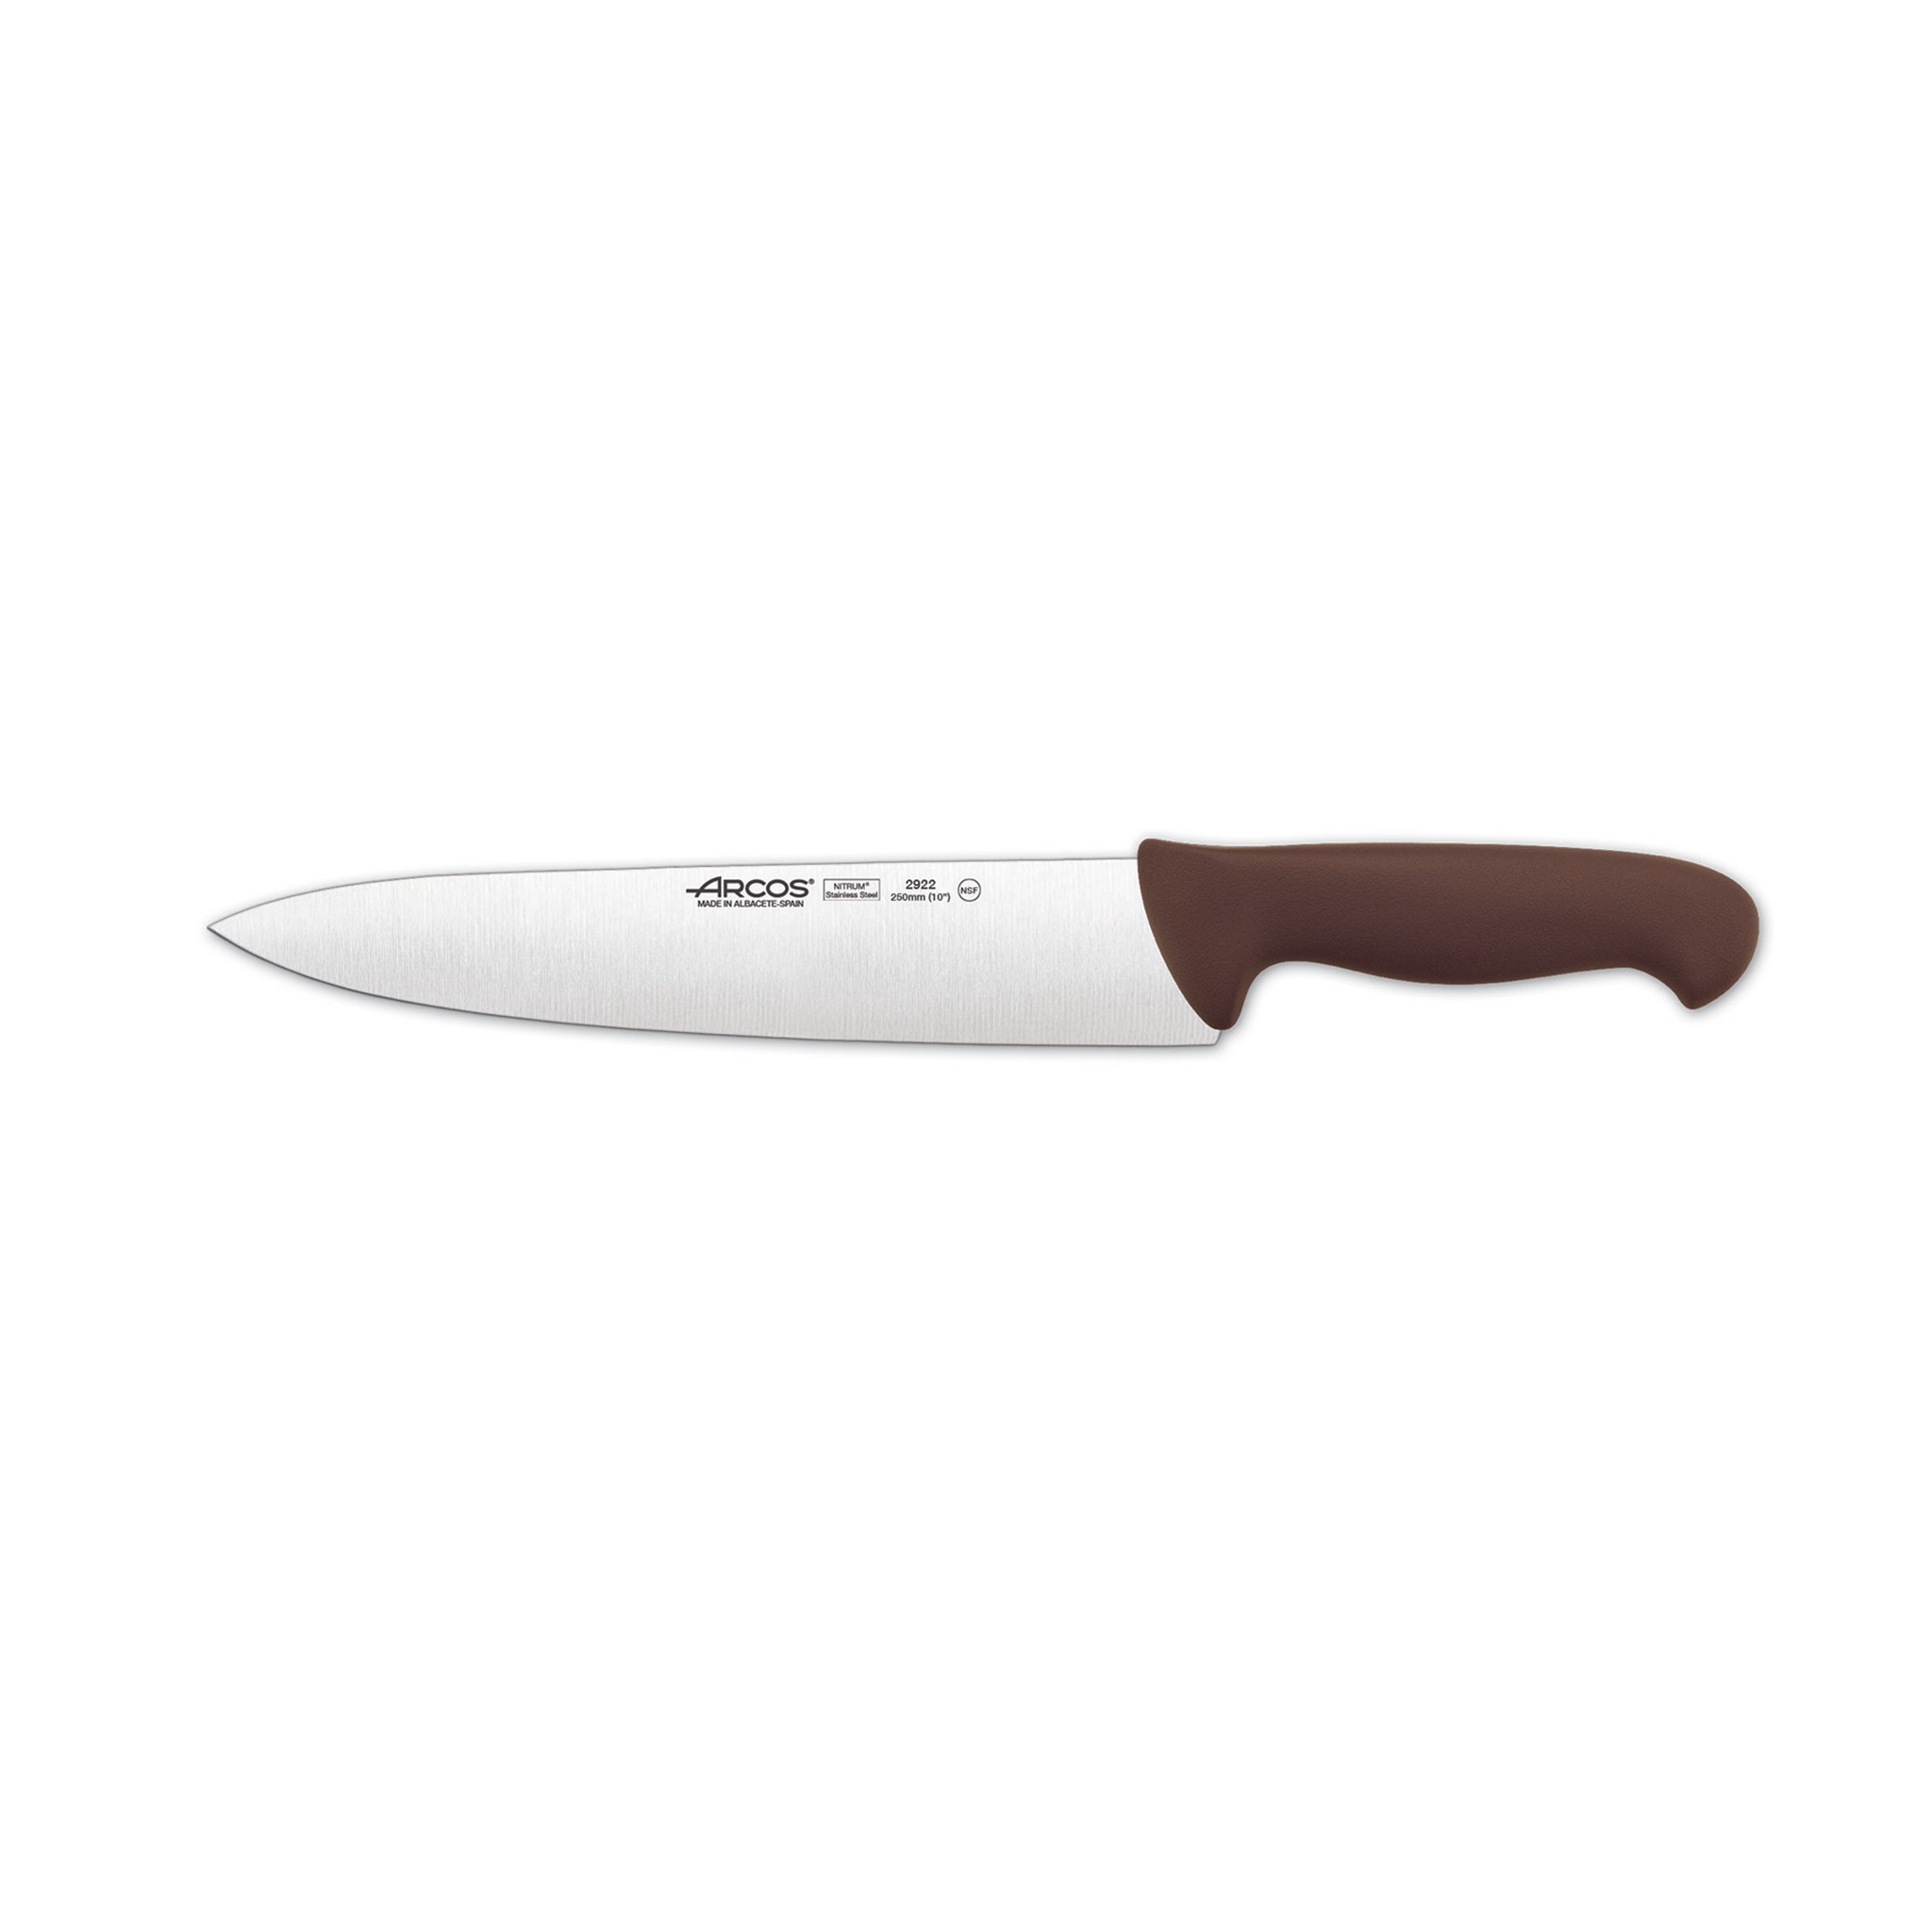 Arcos kuchařský nůž délka čepele 25cm